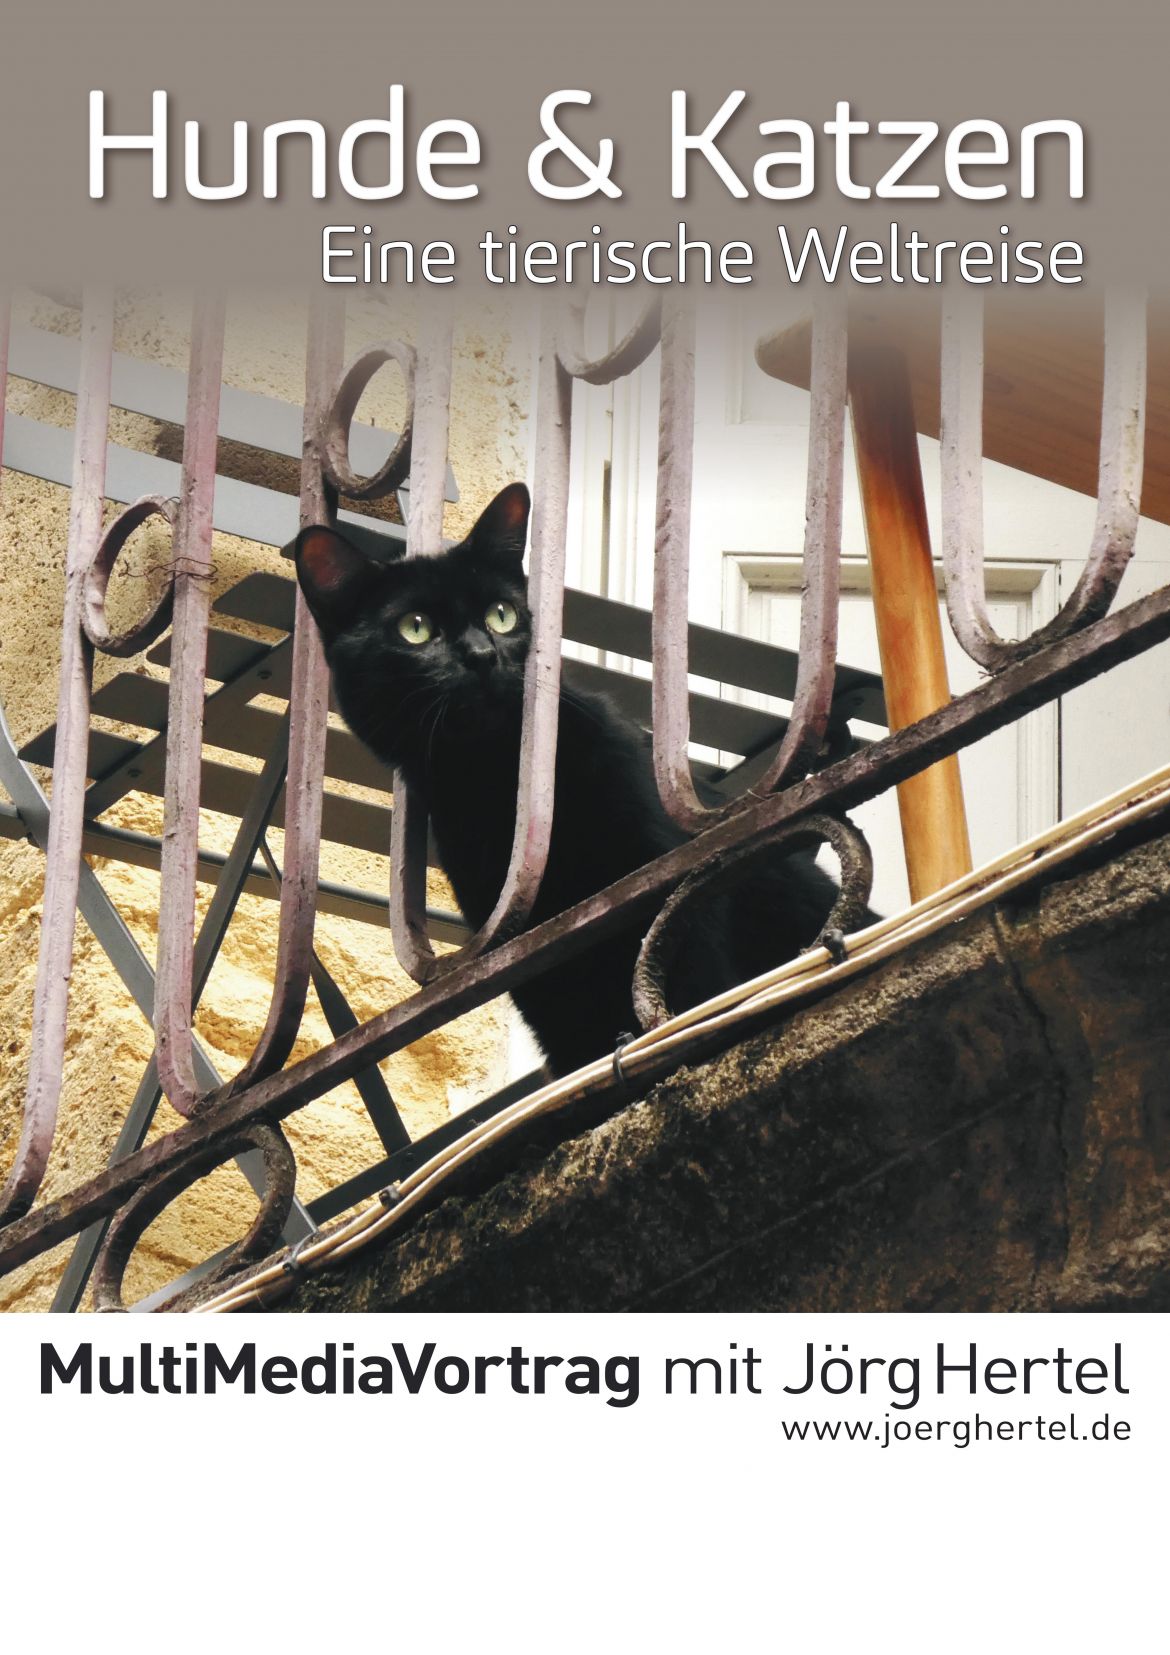 Foto_Welt-Hunde + Katzen Hertel.jpg